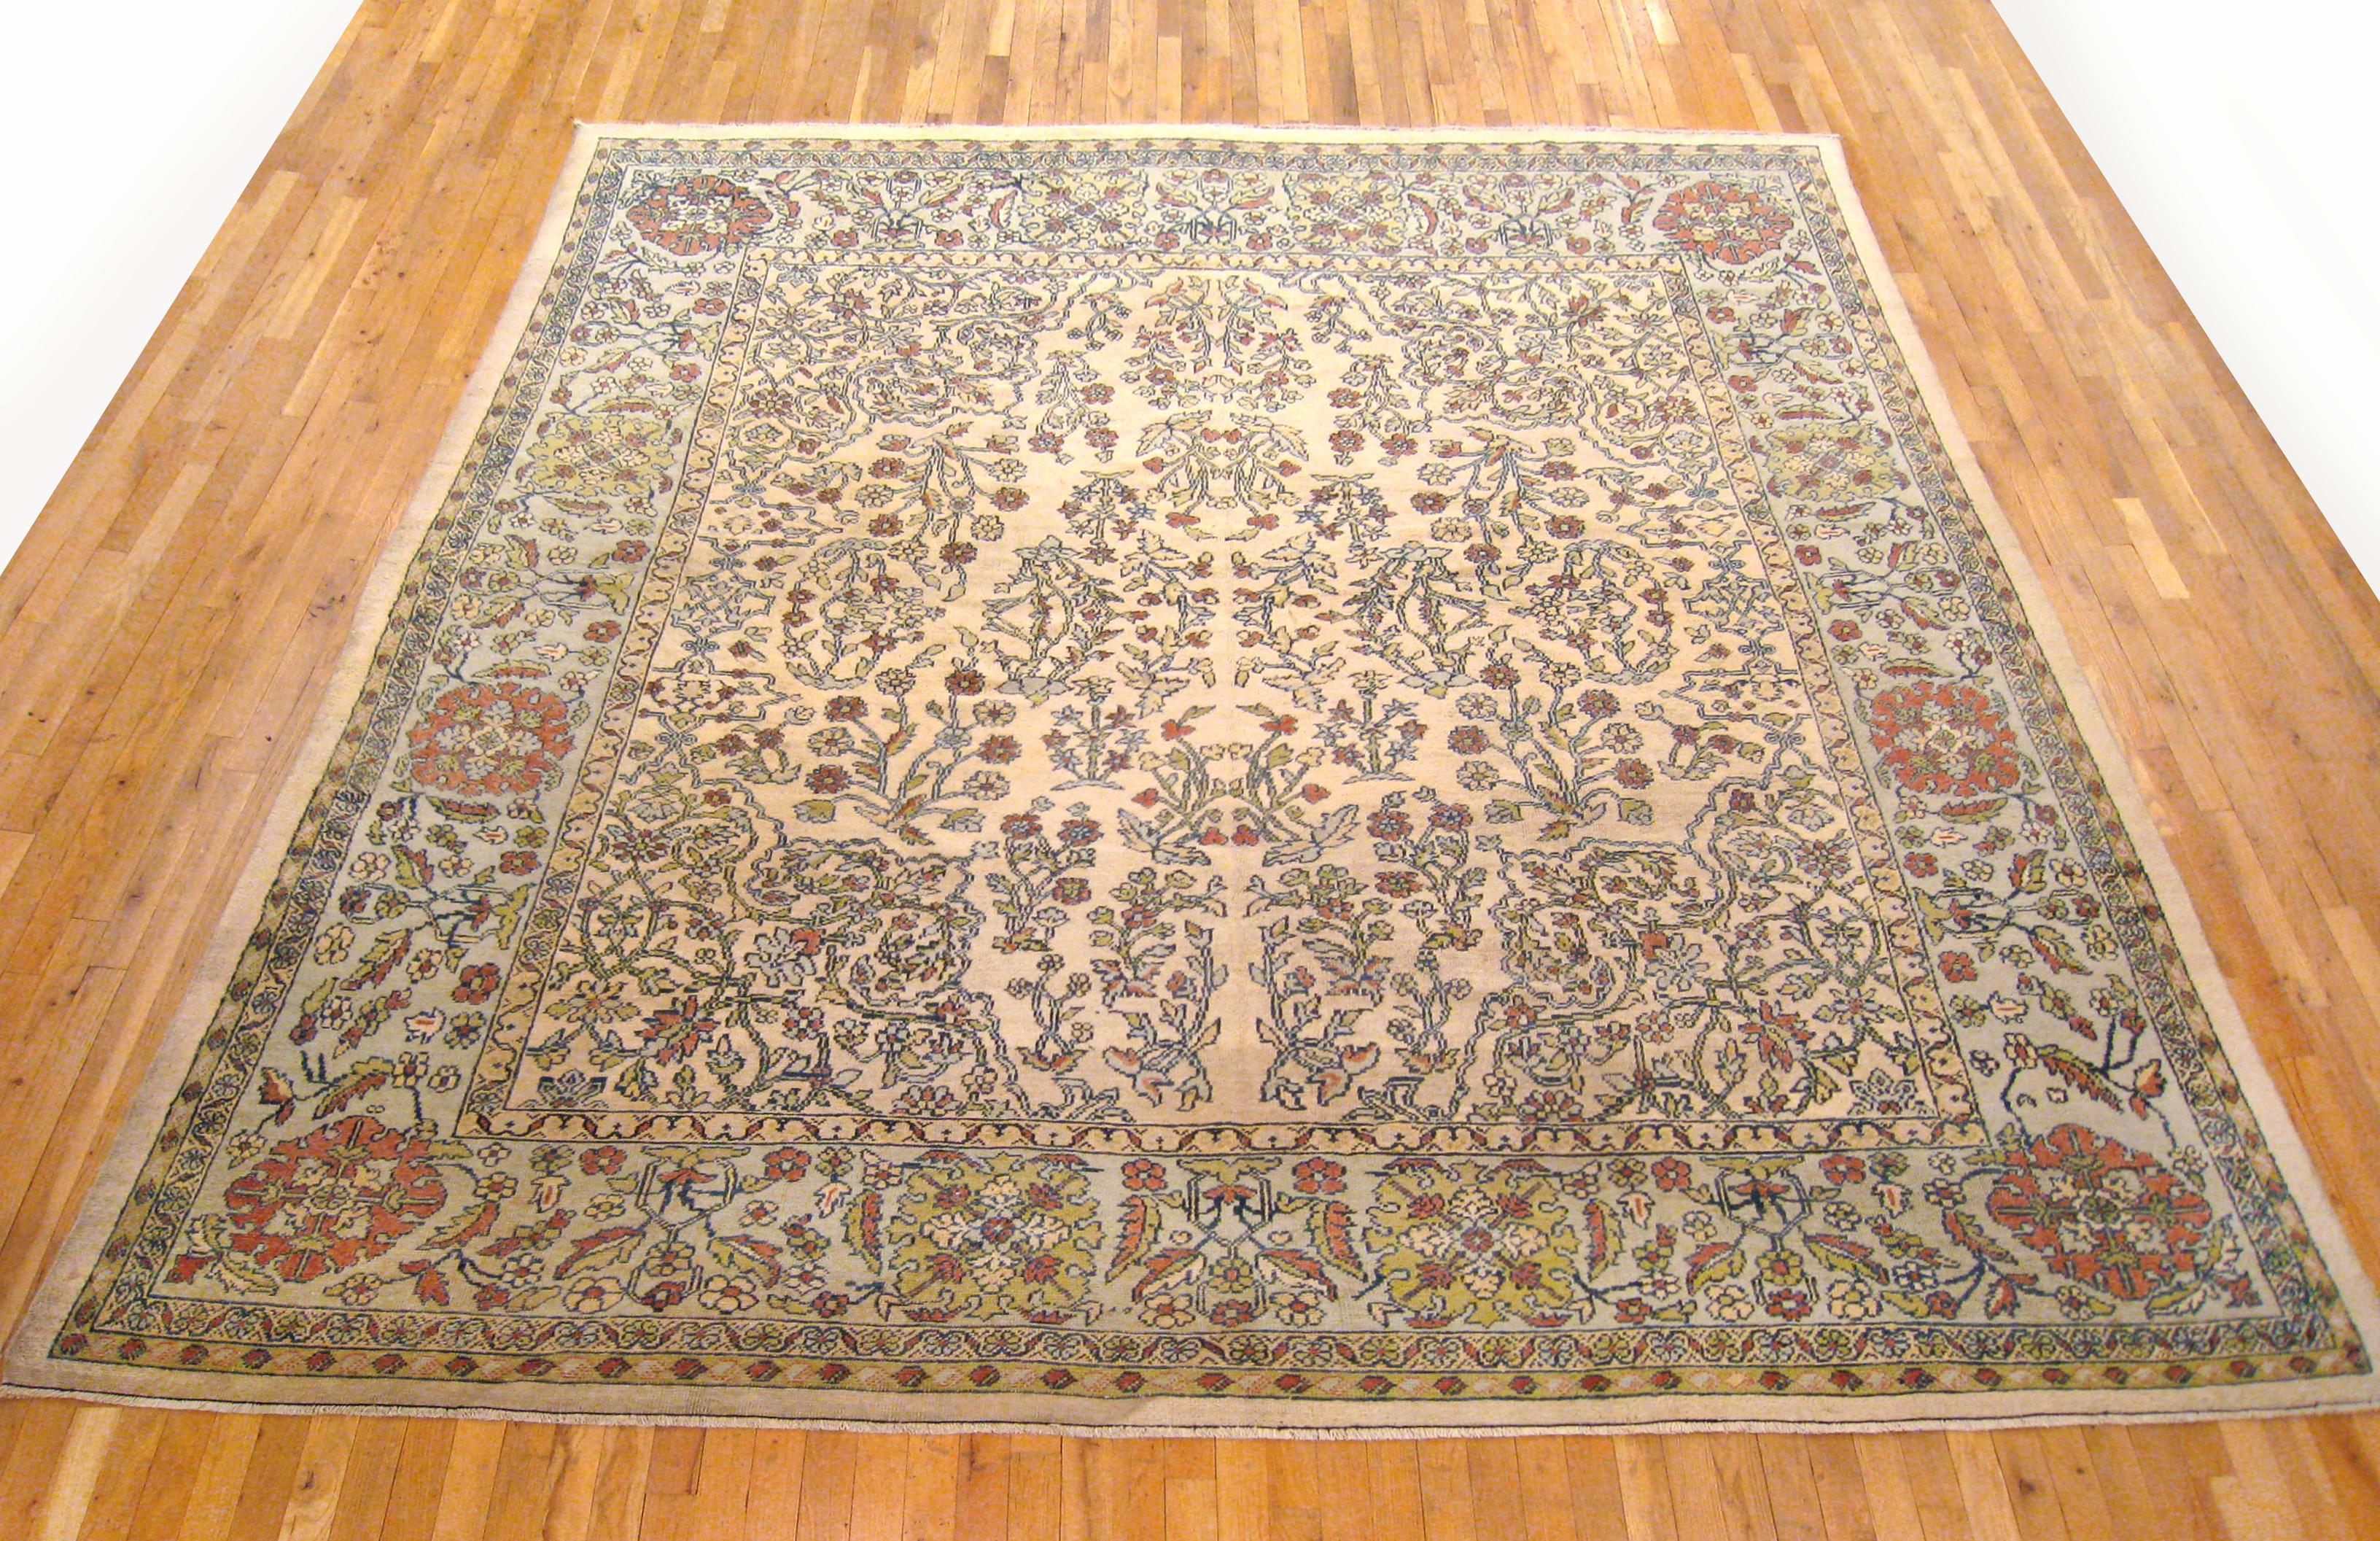 Antiker persischer Sultanabad-Teppich, Zimmergröße, um 1910

Ein einzigartiger antiker persischer Sultanabad-Orientalteppich mit einem dicken und glänzenden Wollflor, handgeknüpft, mit weichem Griff und hoher Strapazierfähigkeit. Dieser Teppich